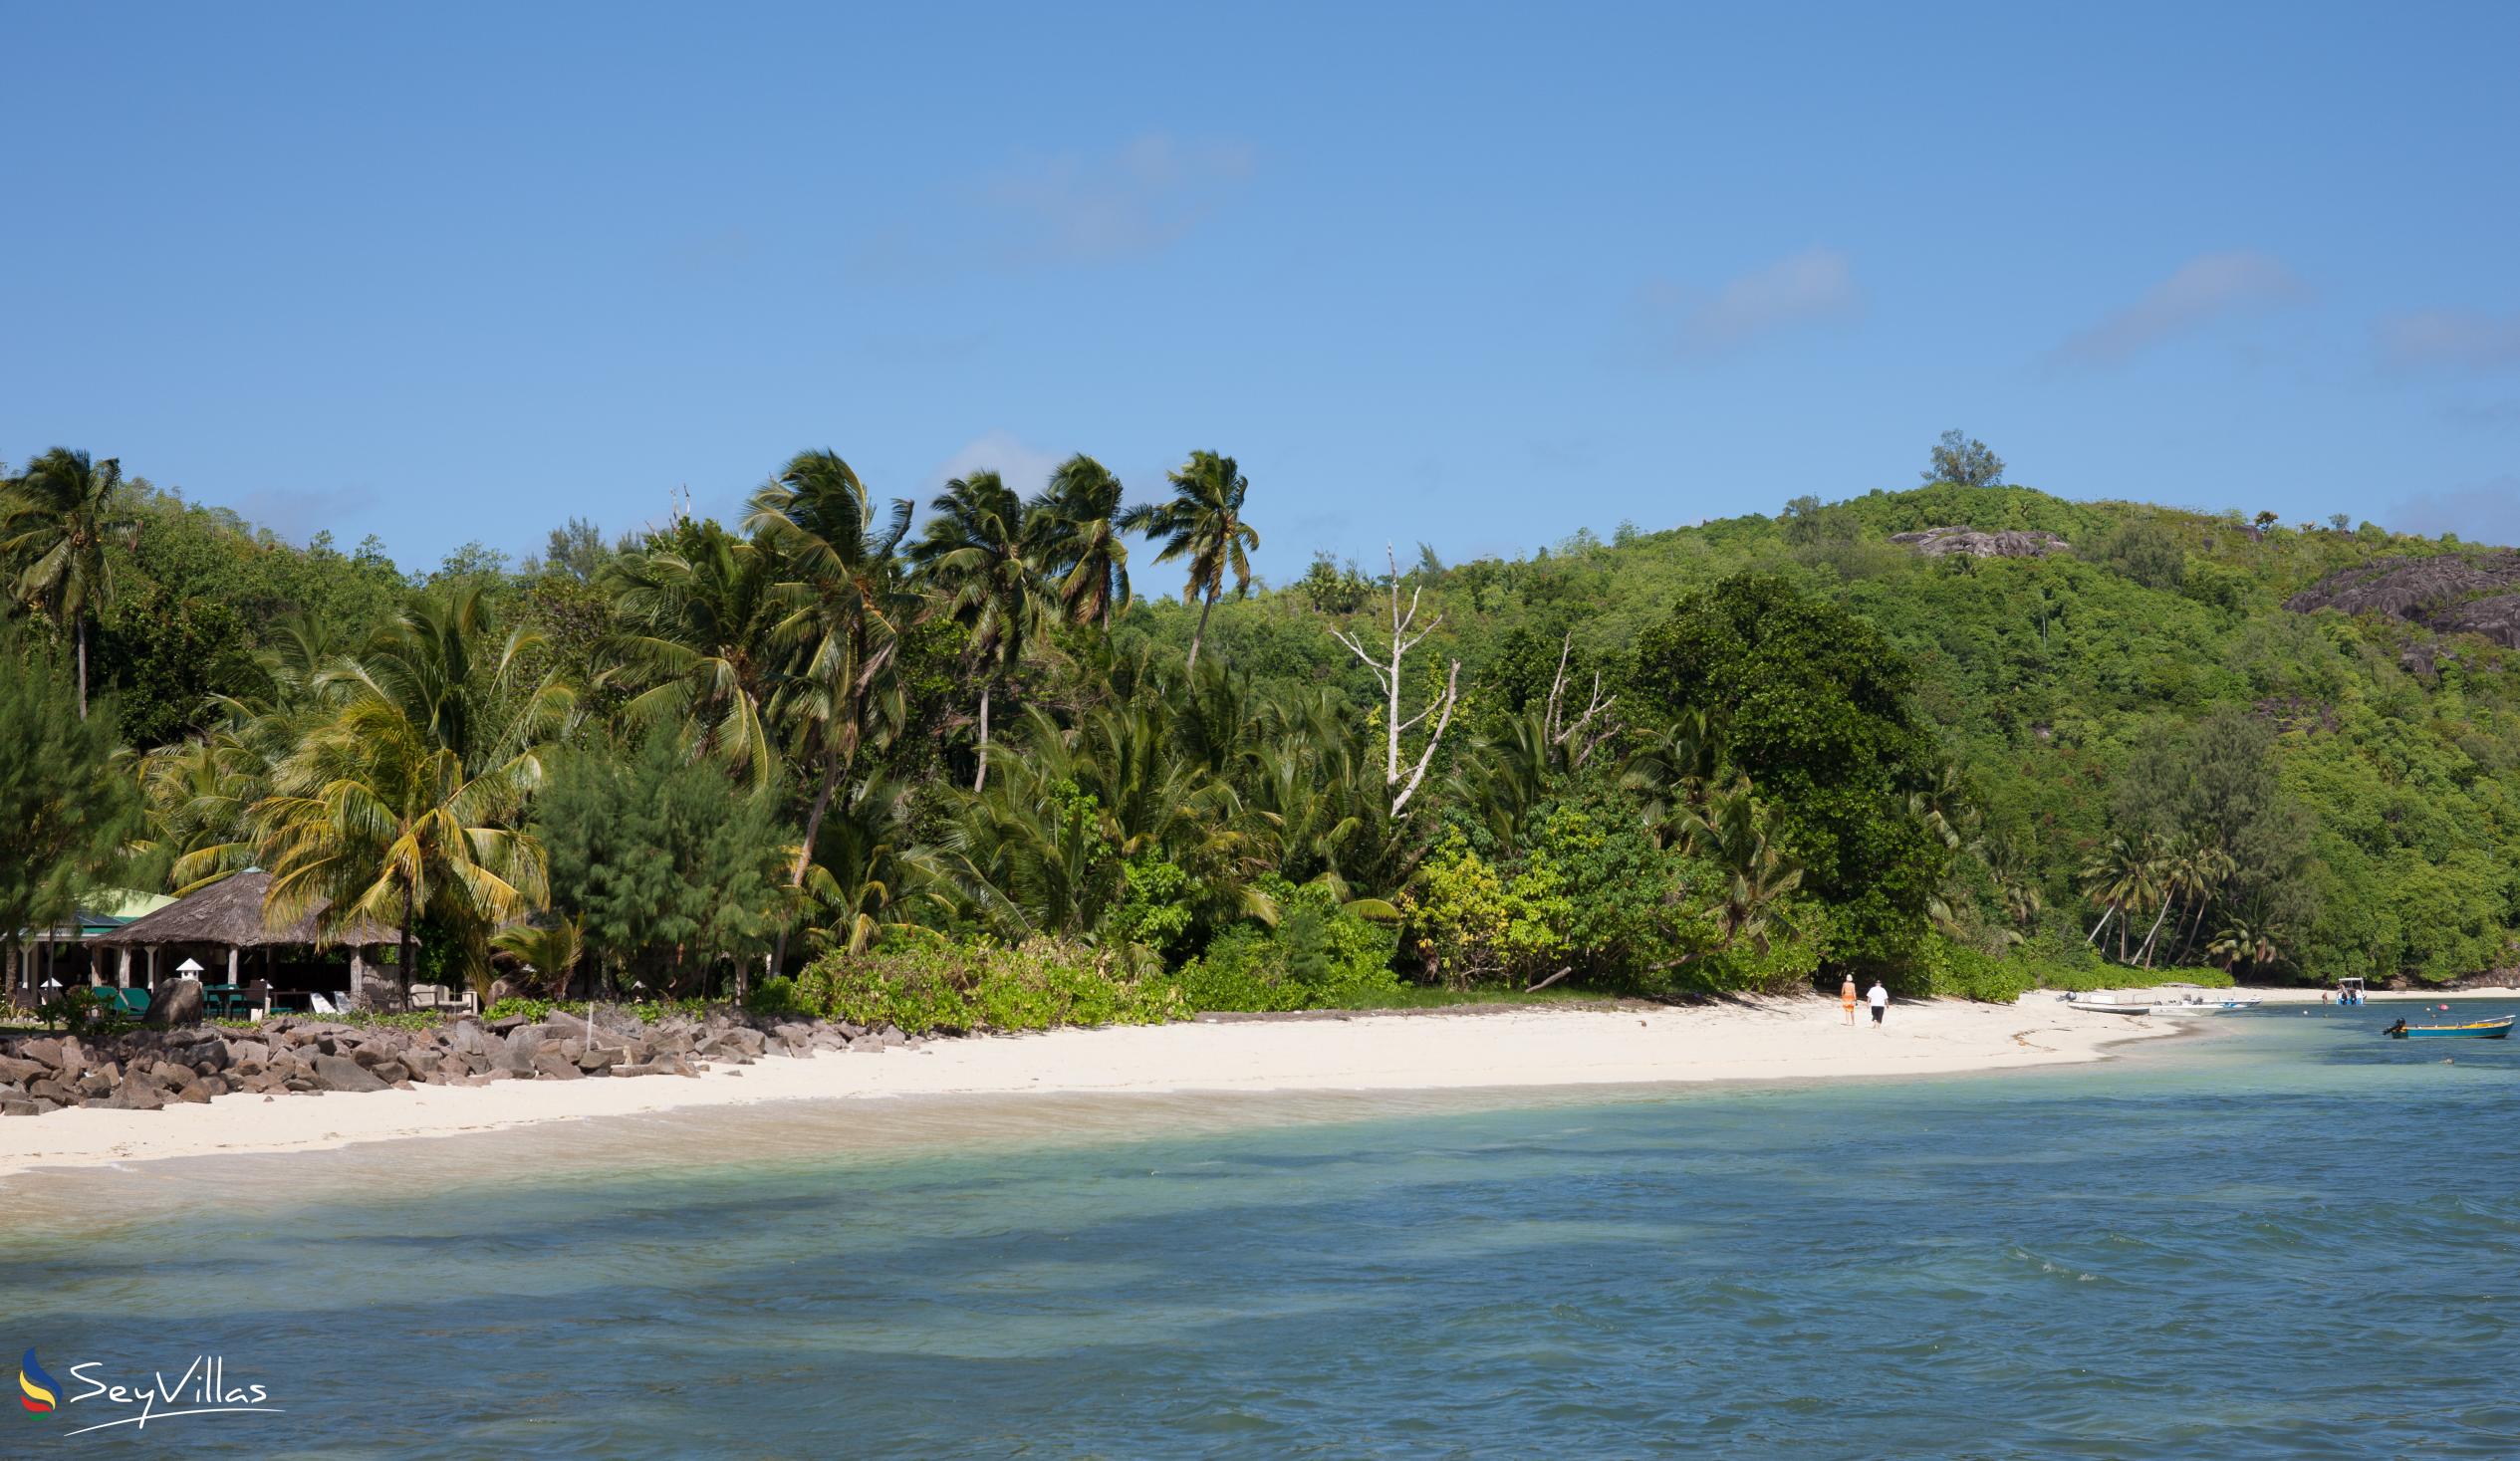 Photo 6: Takamaka Beach - Cerf Island (Seychelles)